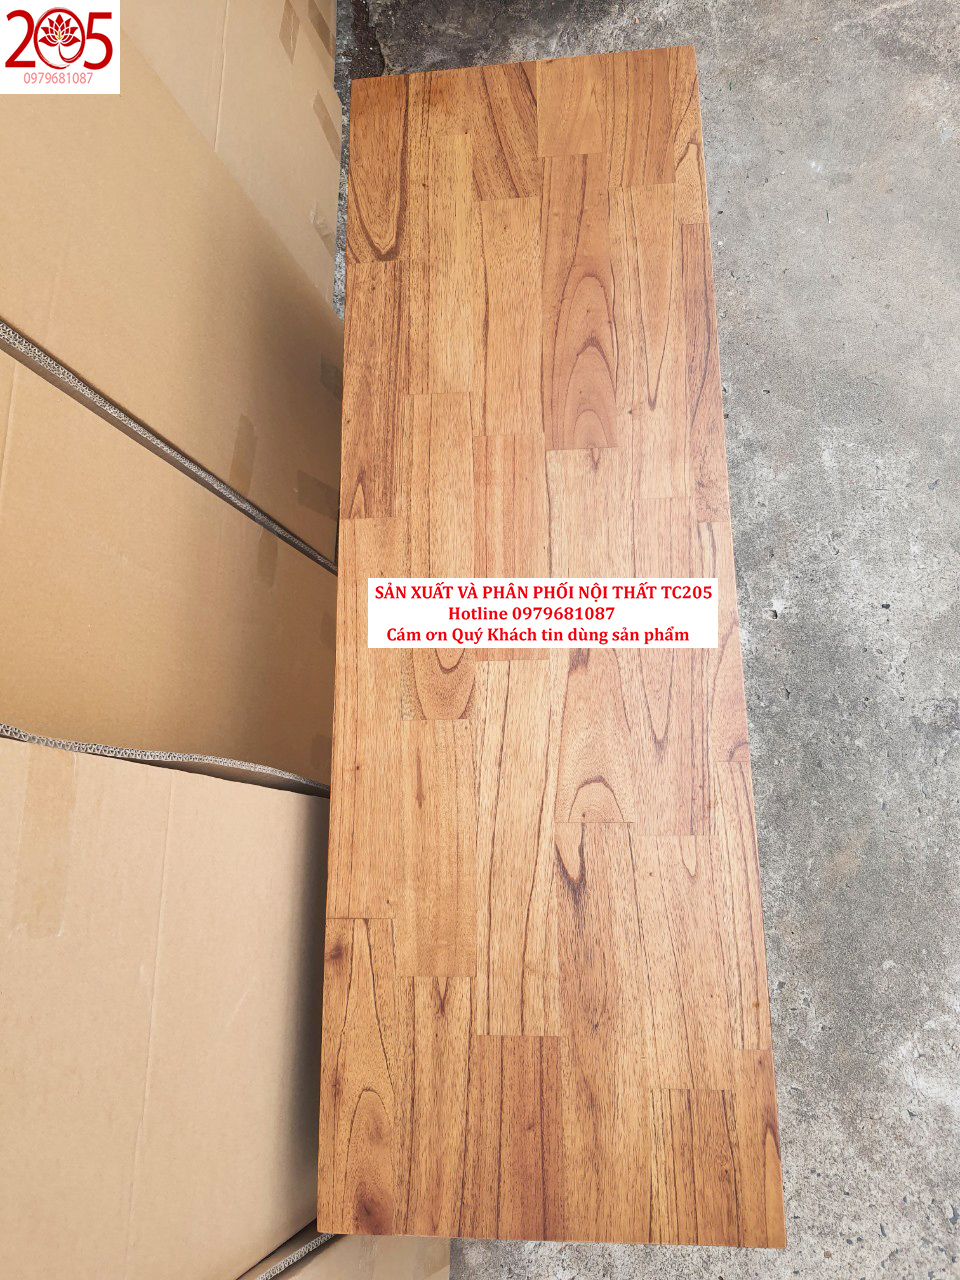 BĂNG GHẾ DÀI 1M1 - 205 TC Croll Wooden Bench